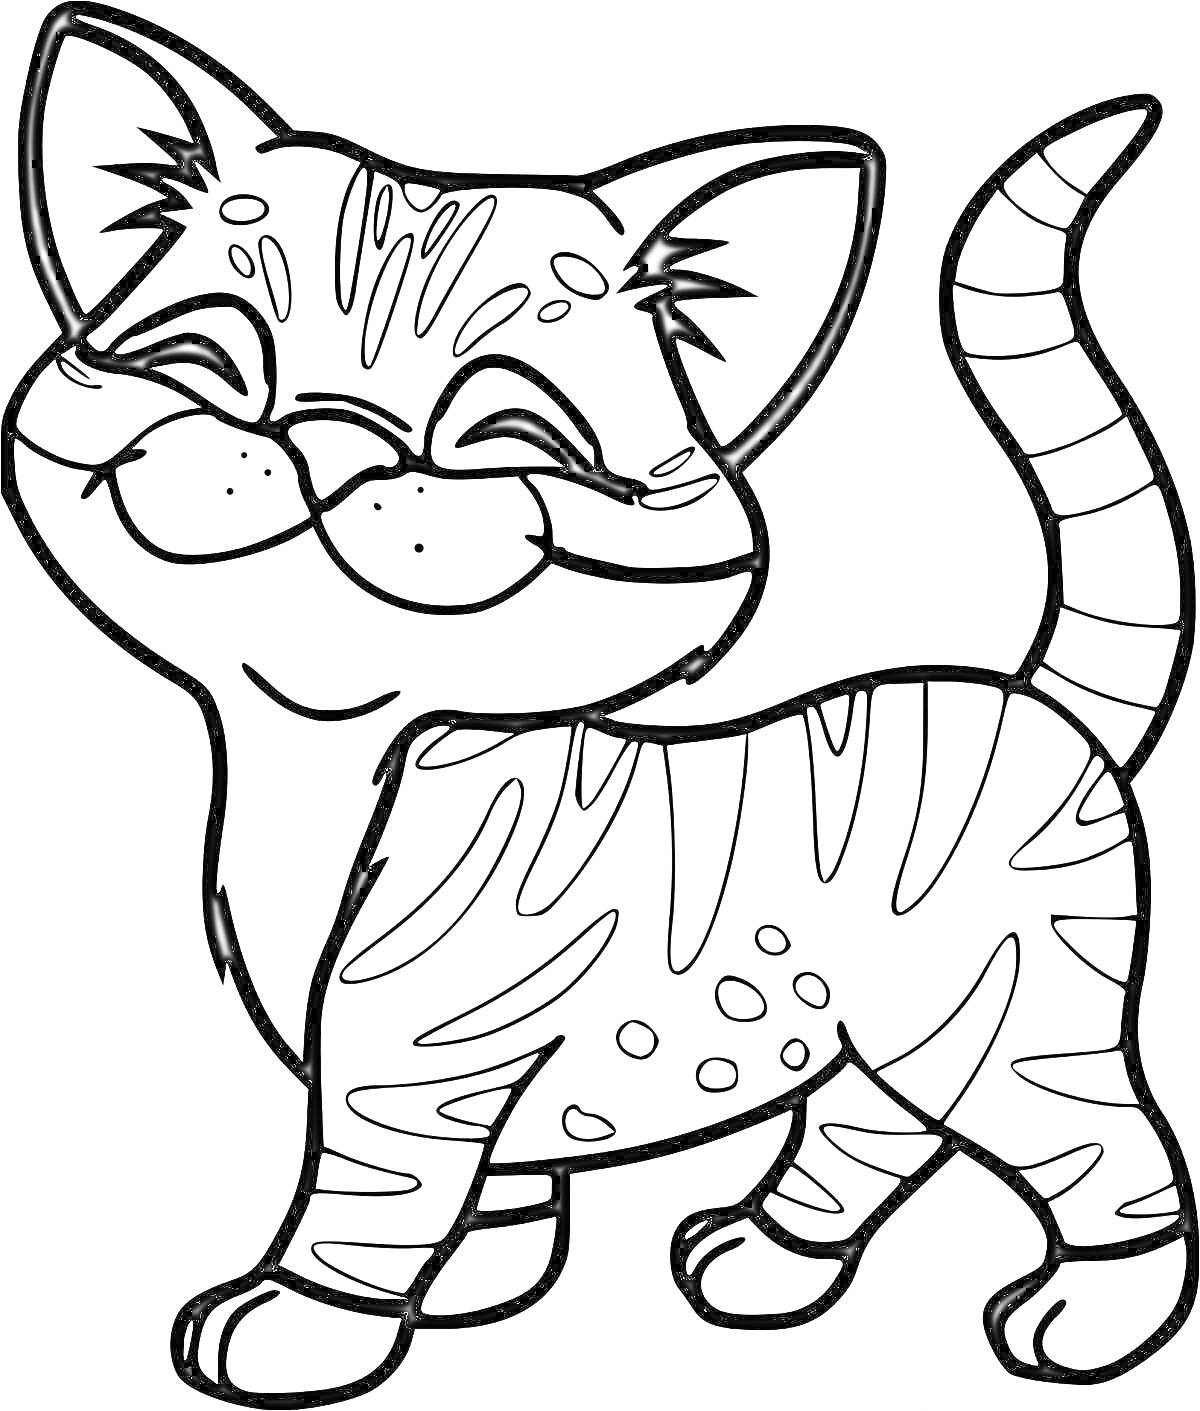 улыбающийся полосатый кот с пятнами и поднятым хвостом